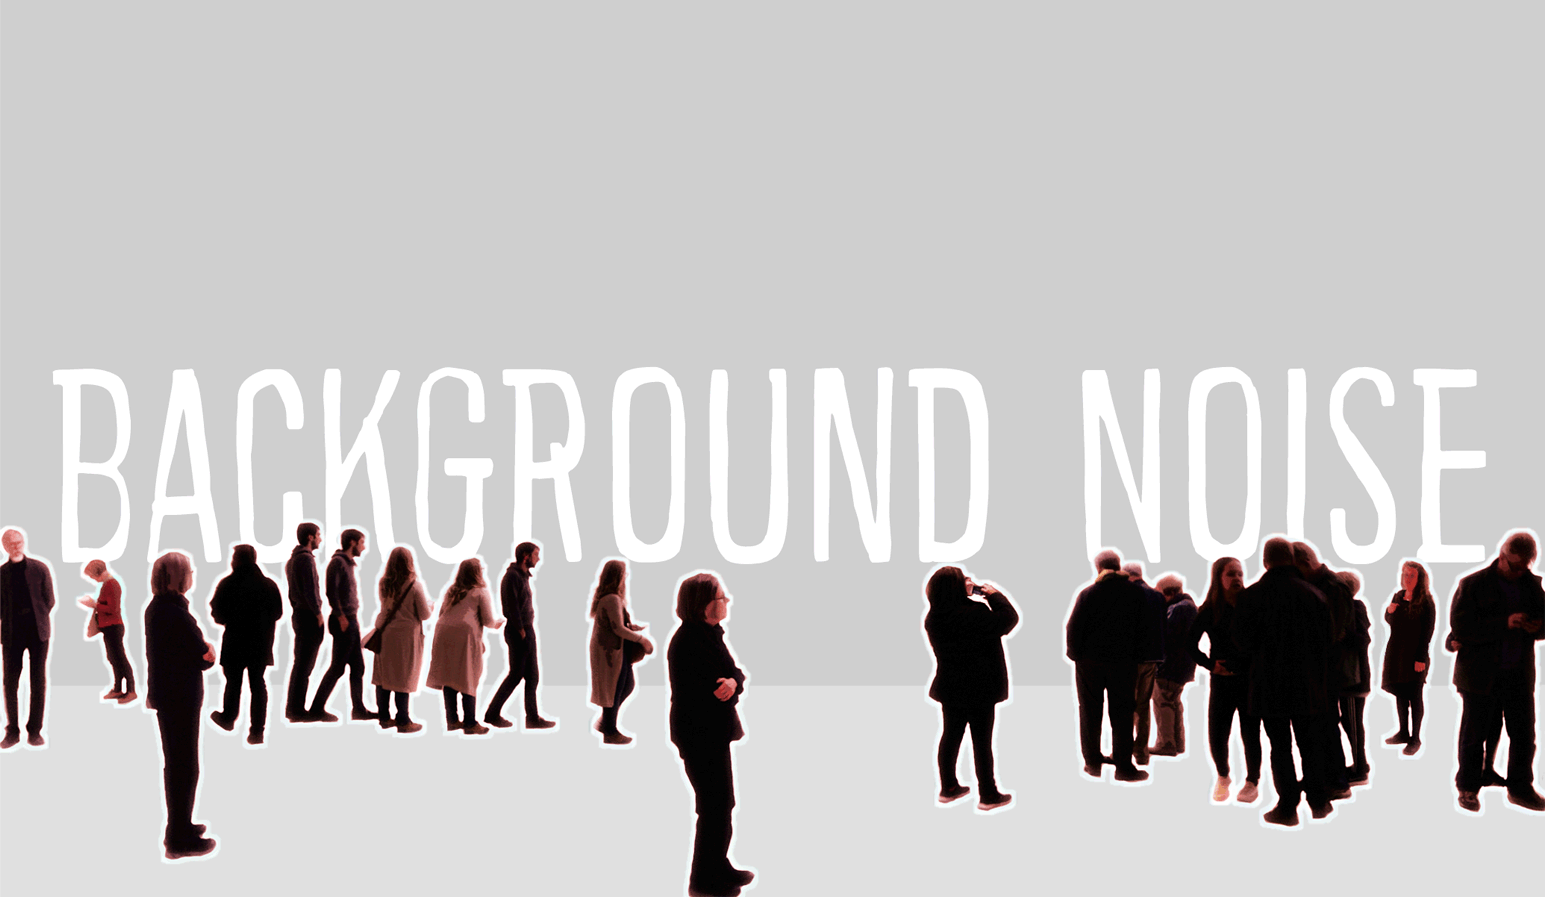 Background noise